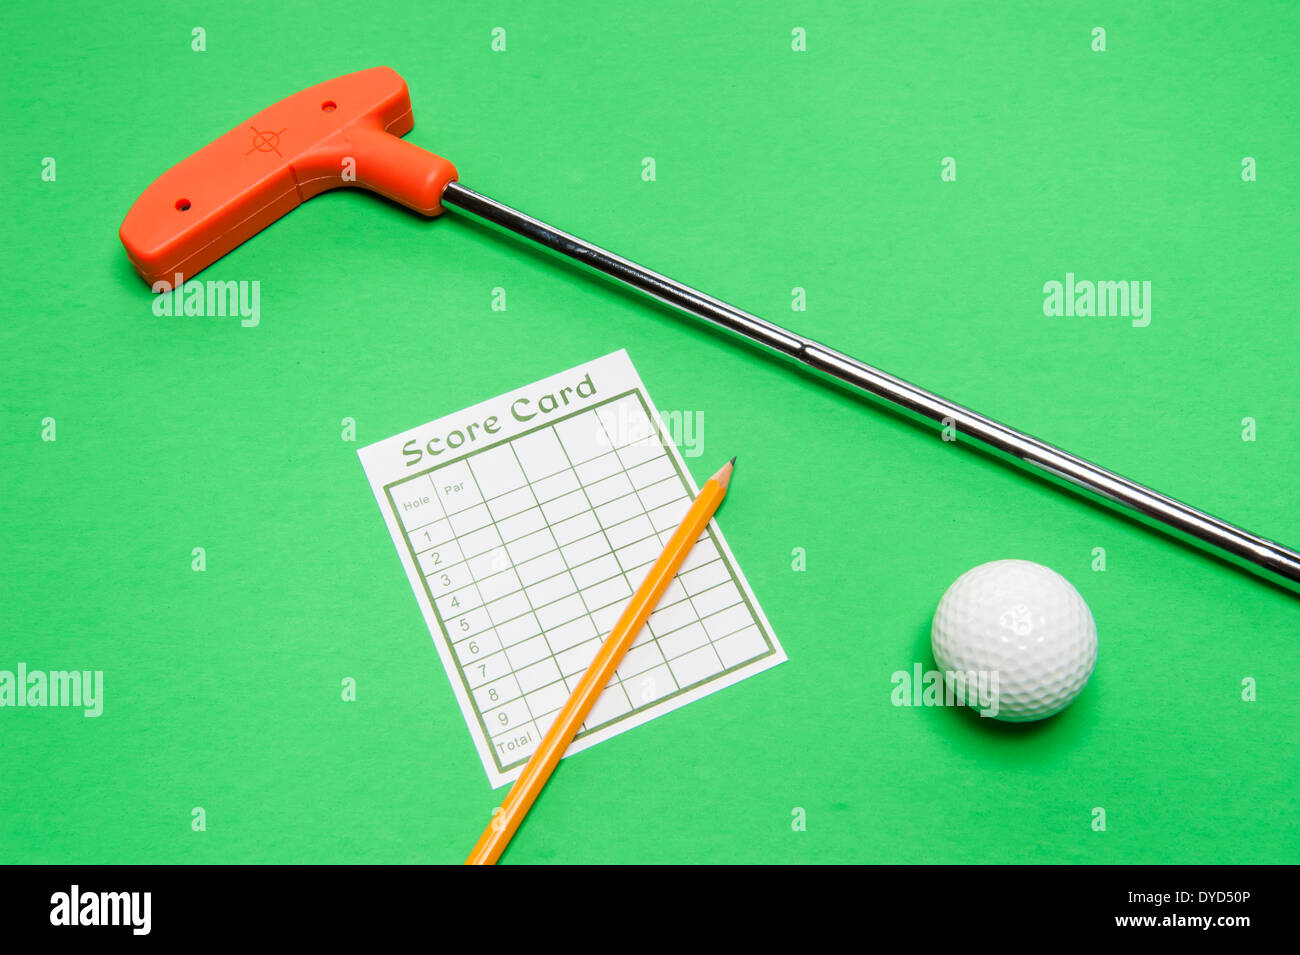 Mini Golf-Club mit Scorekarte, Ball und Bleistift auf grünem Hintergrund Stockfoto